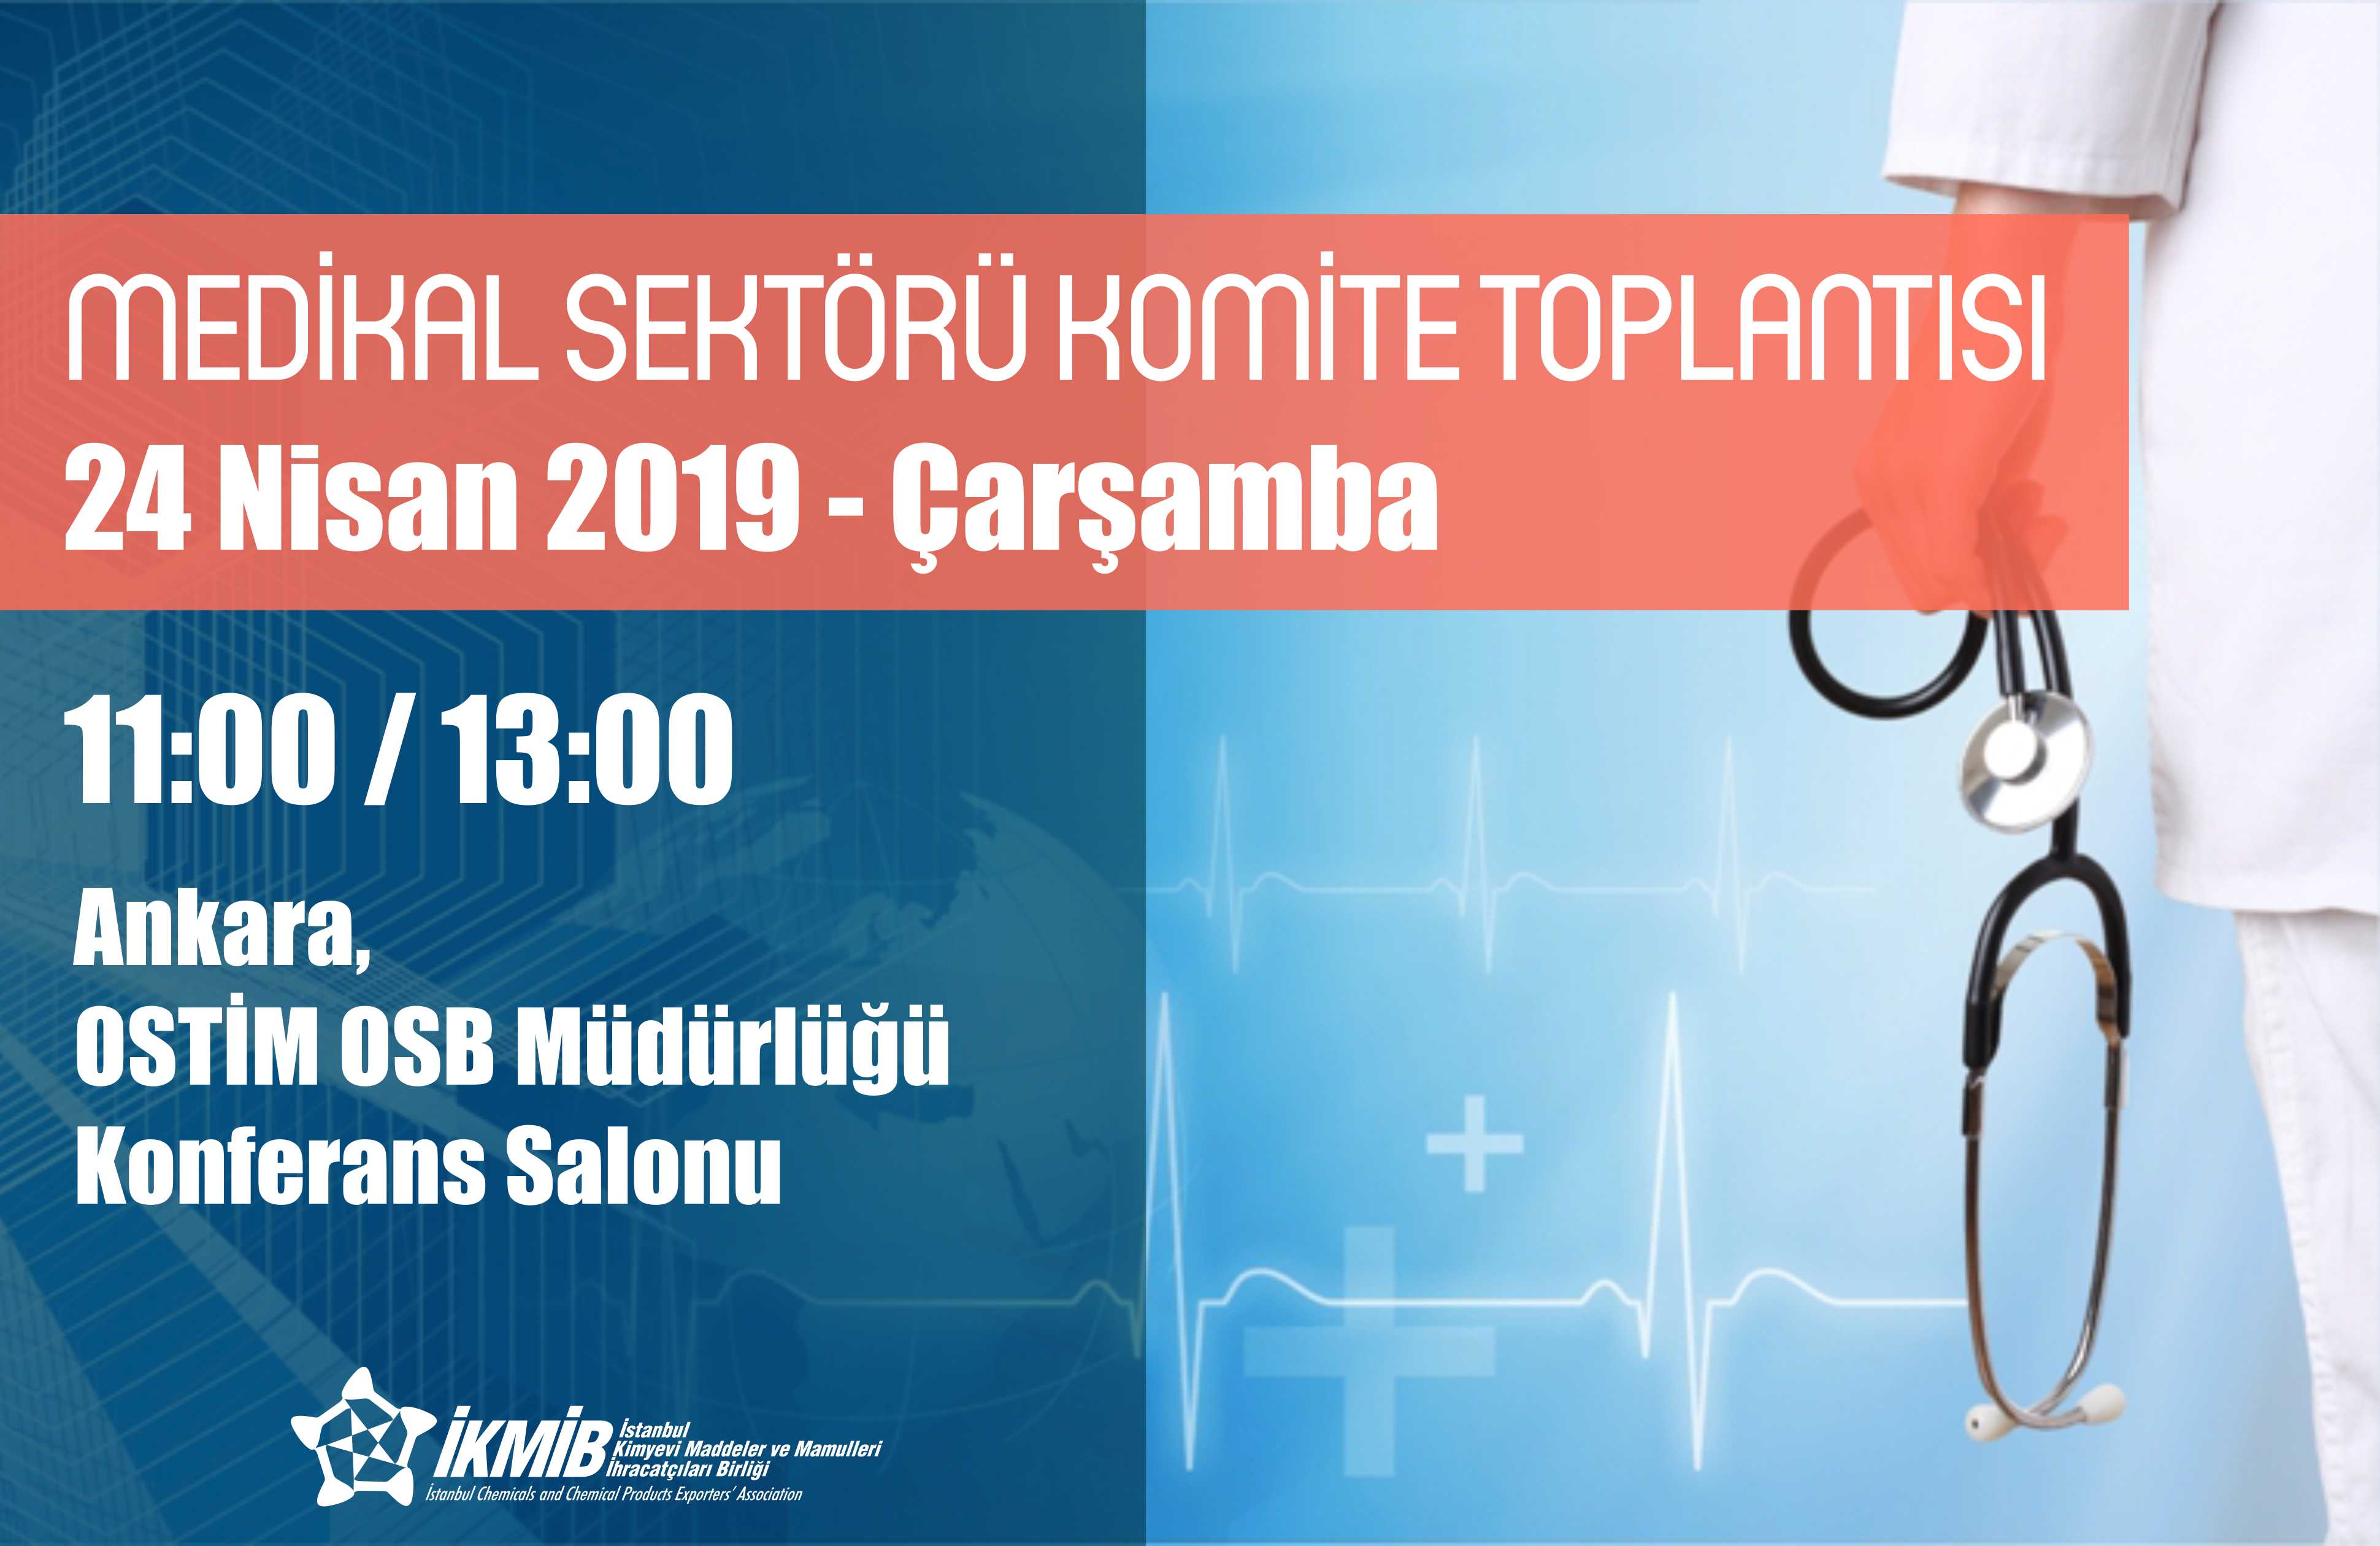 Medikal Sektörü Komite Toplantısı, 24 Nisan 2019, Ankara